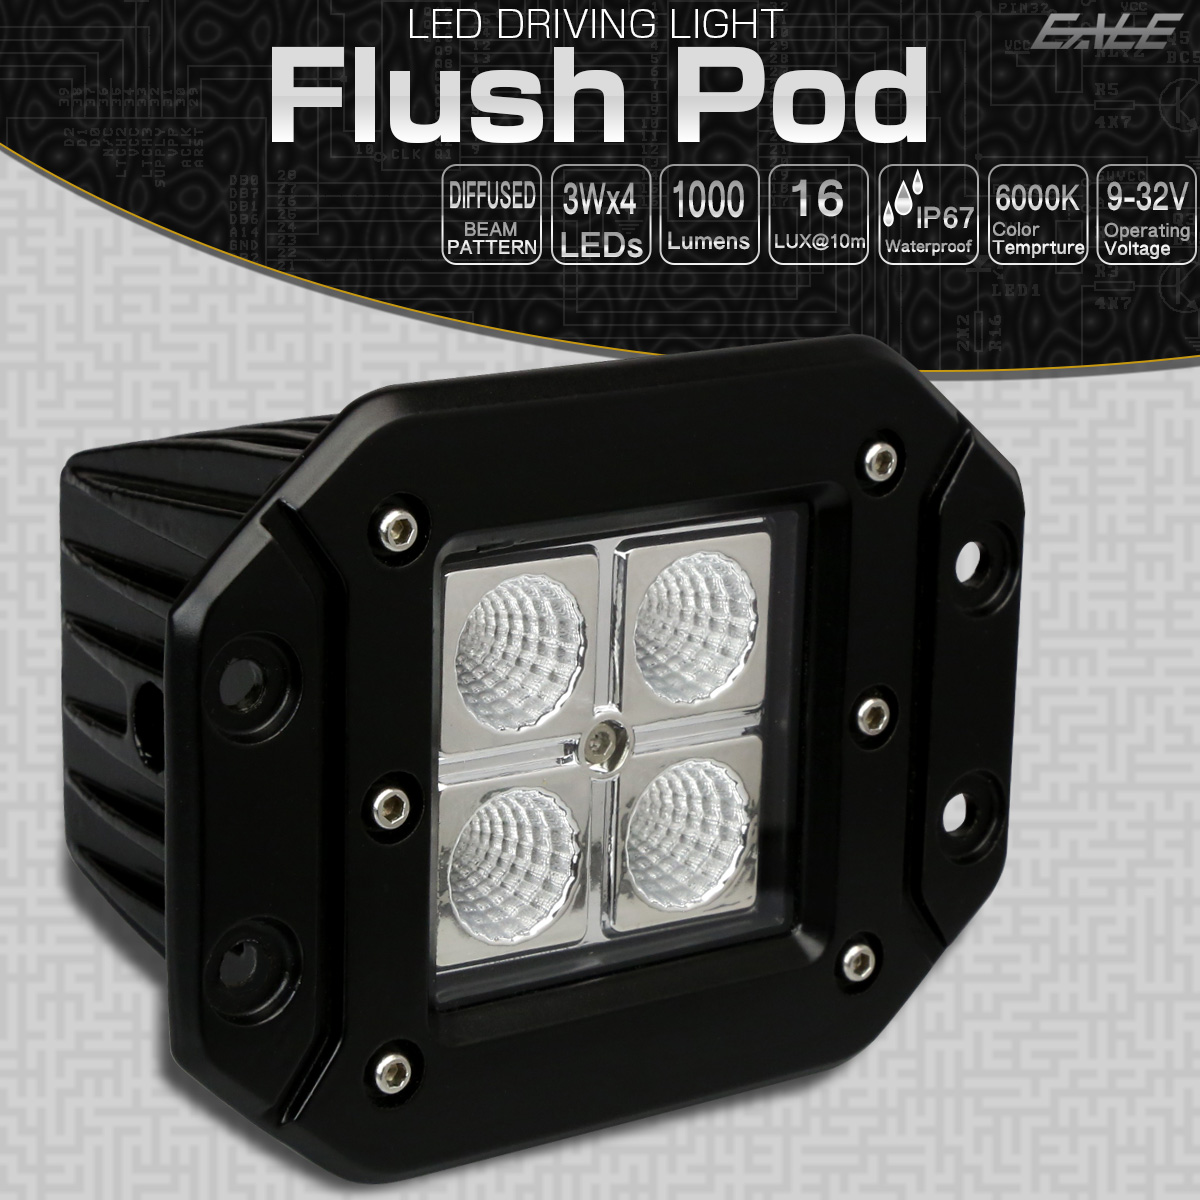 LED ドライビングランプ Flush Pod 埋め込み型 12W CREE XB-D 汎用